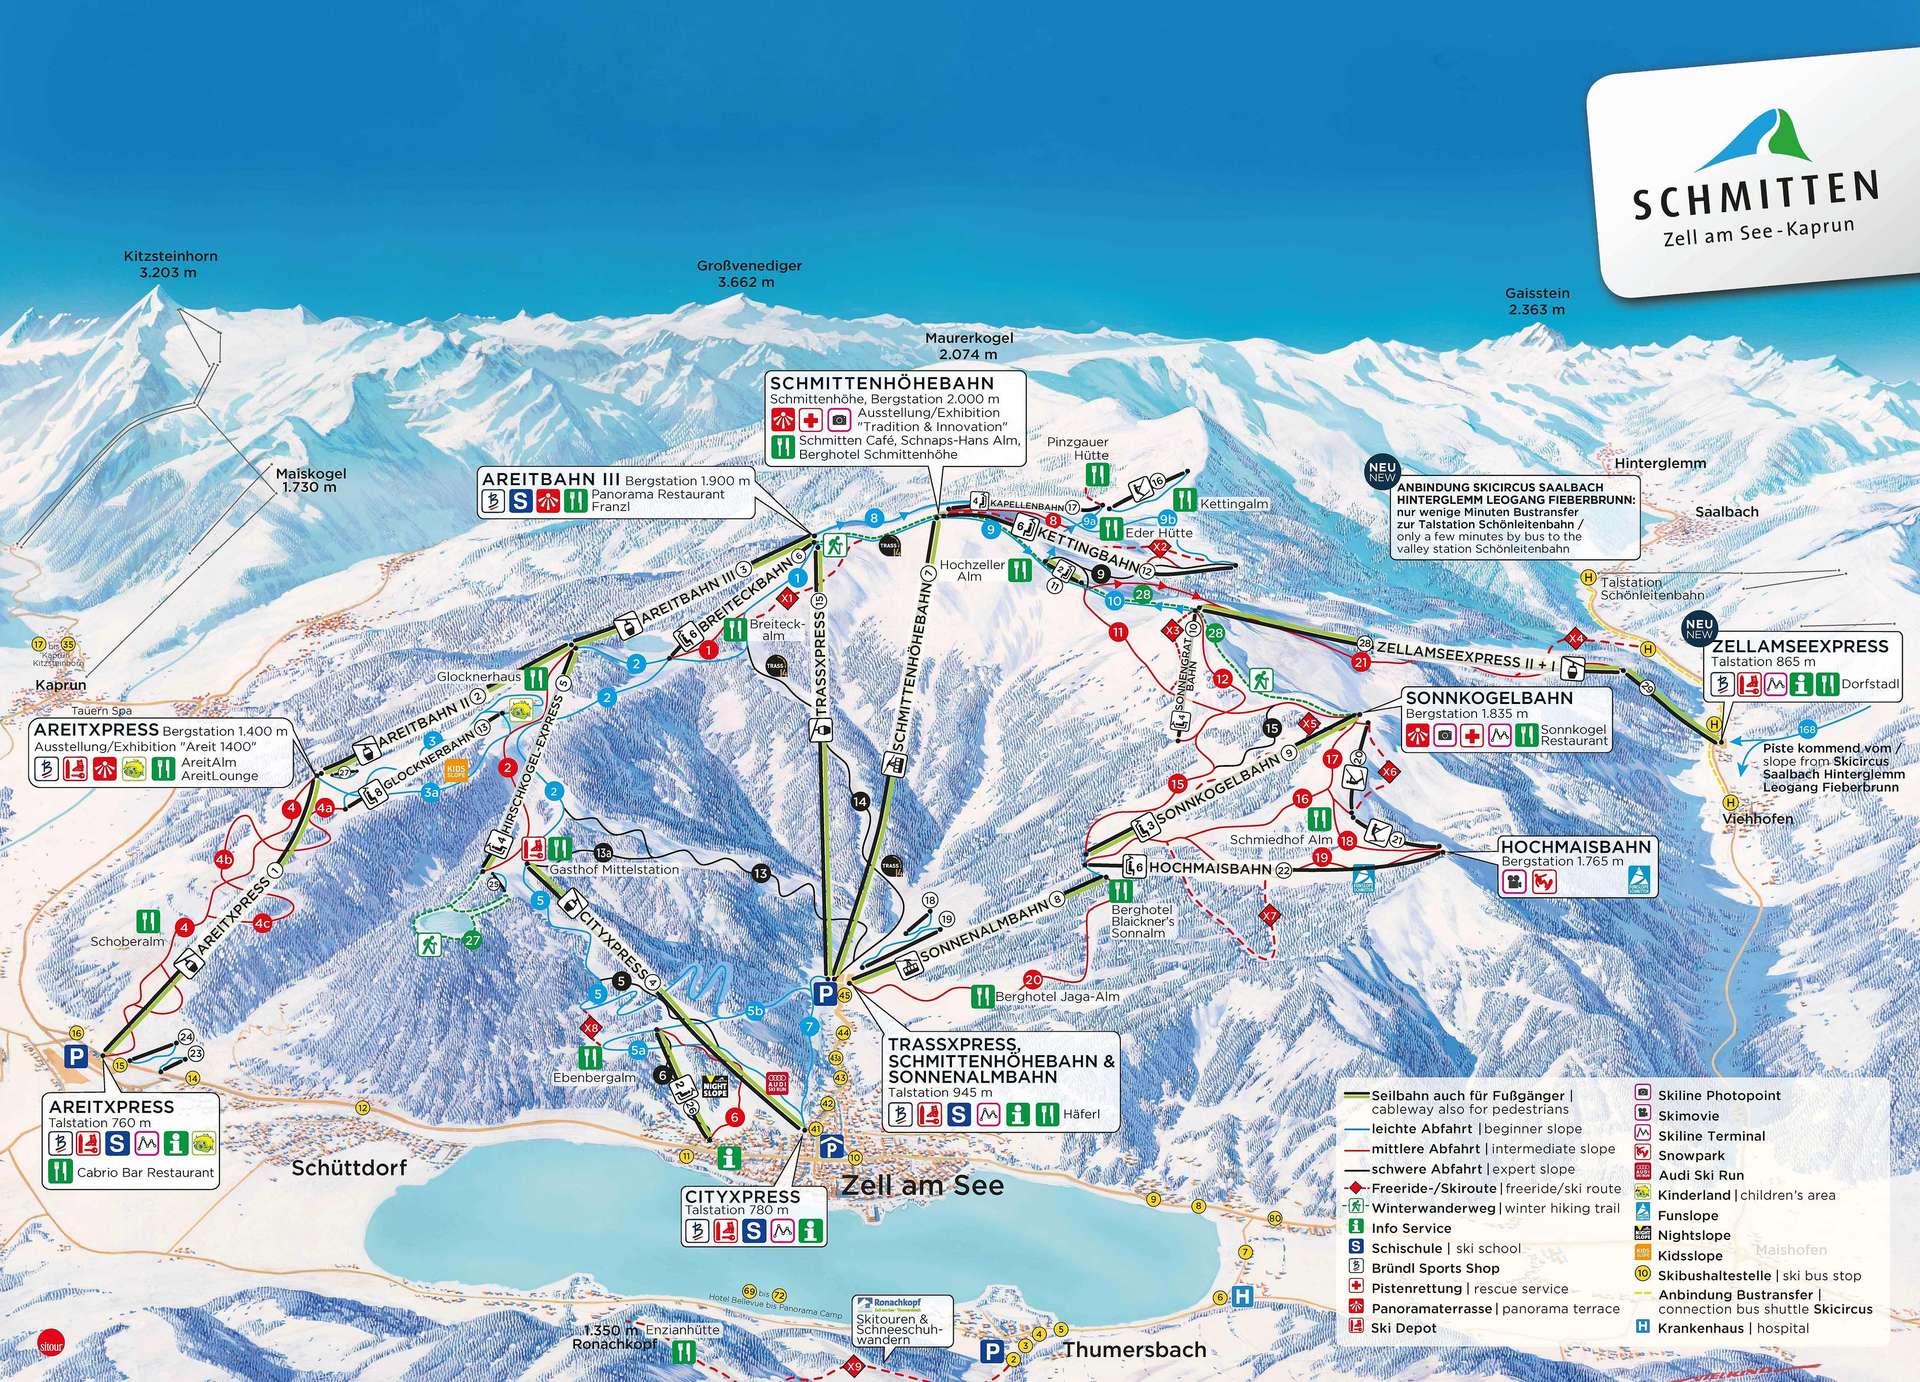 De Turín a Canazei por el Tirol. Viajando en solitario, esquiando en compañía.